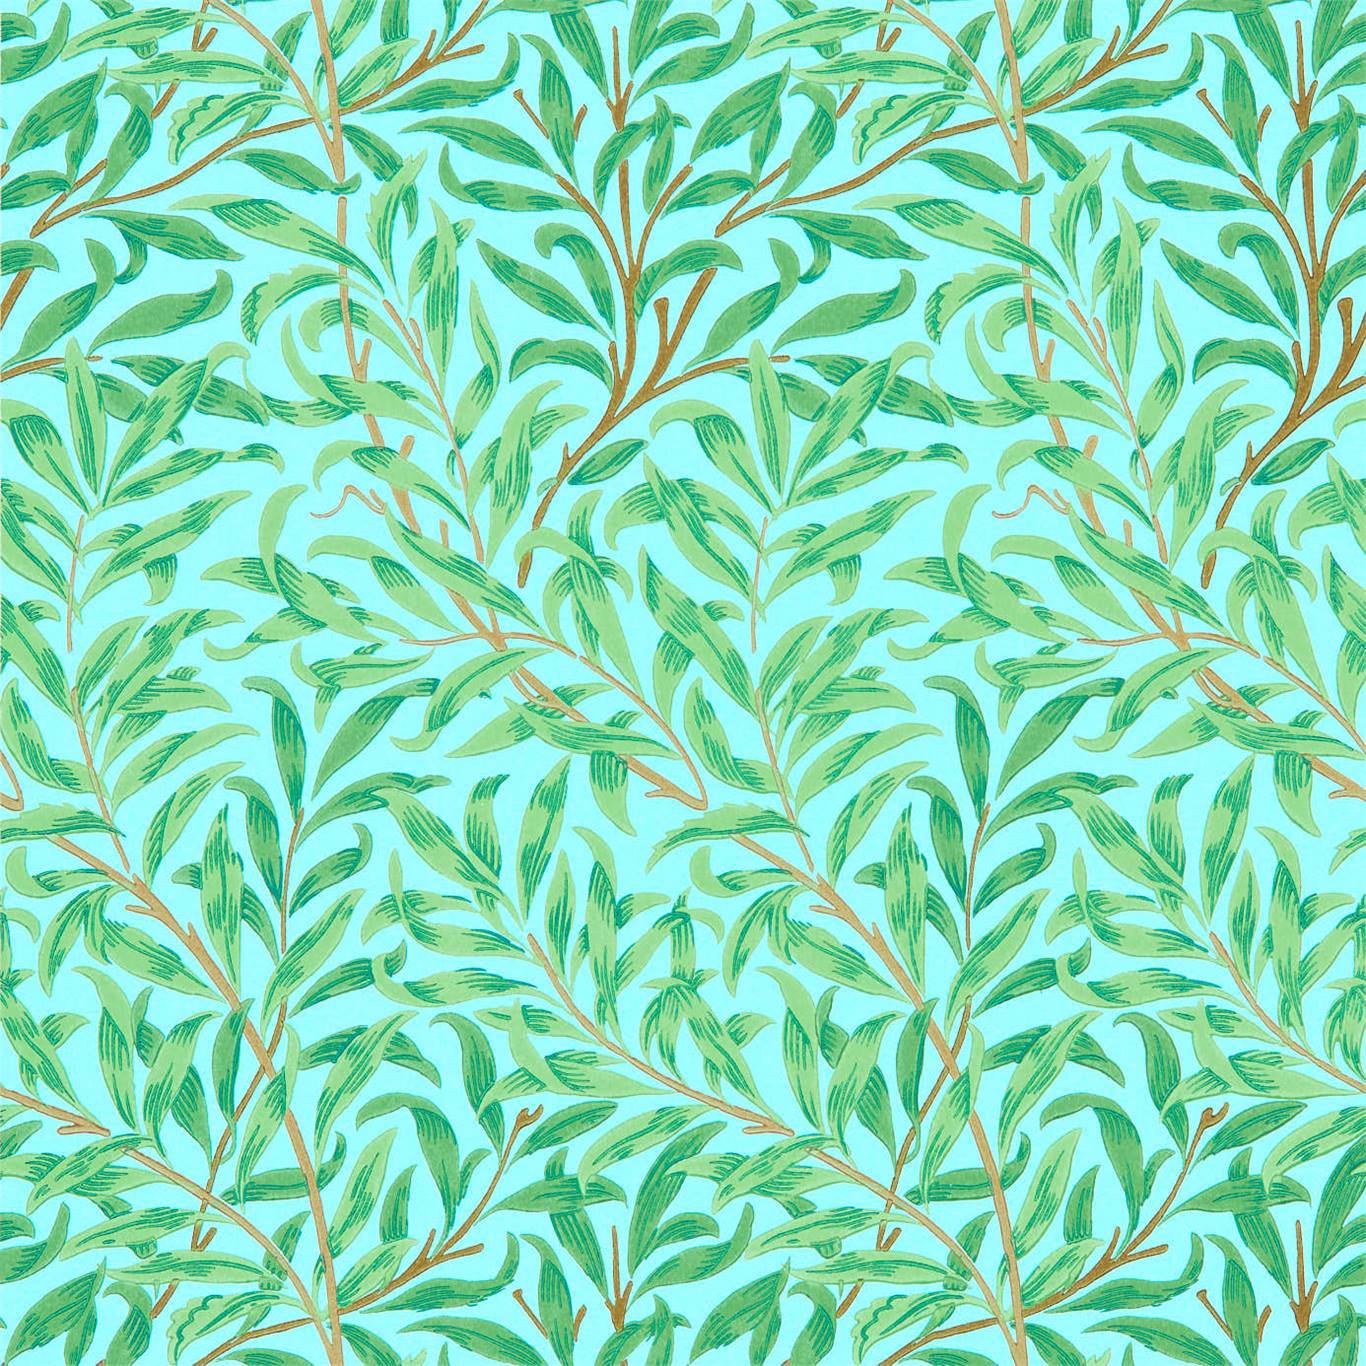 William Morris Willow Bough Wallpaper